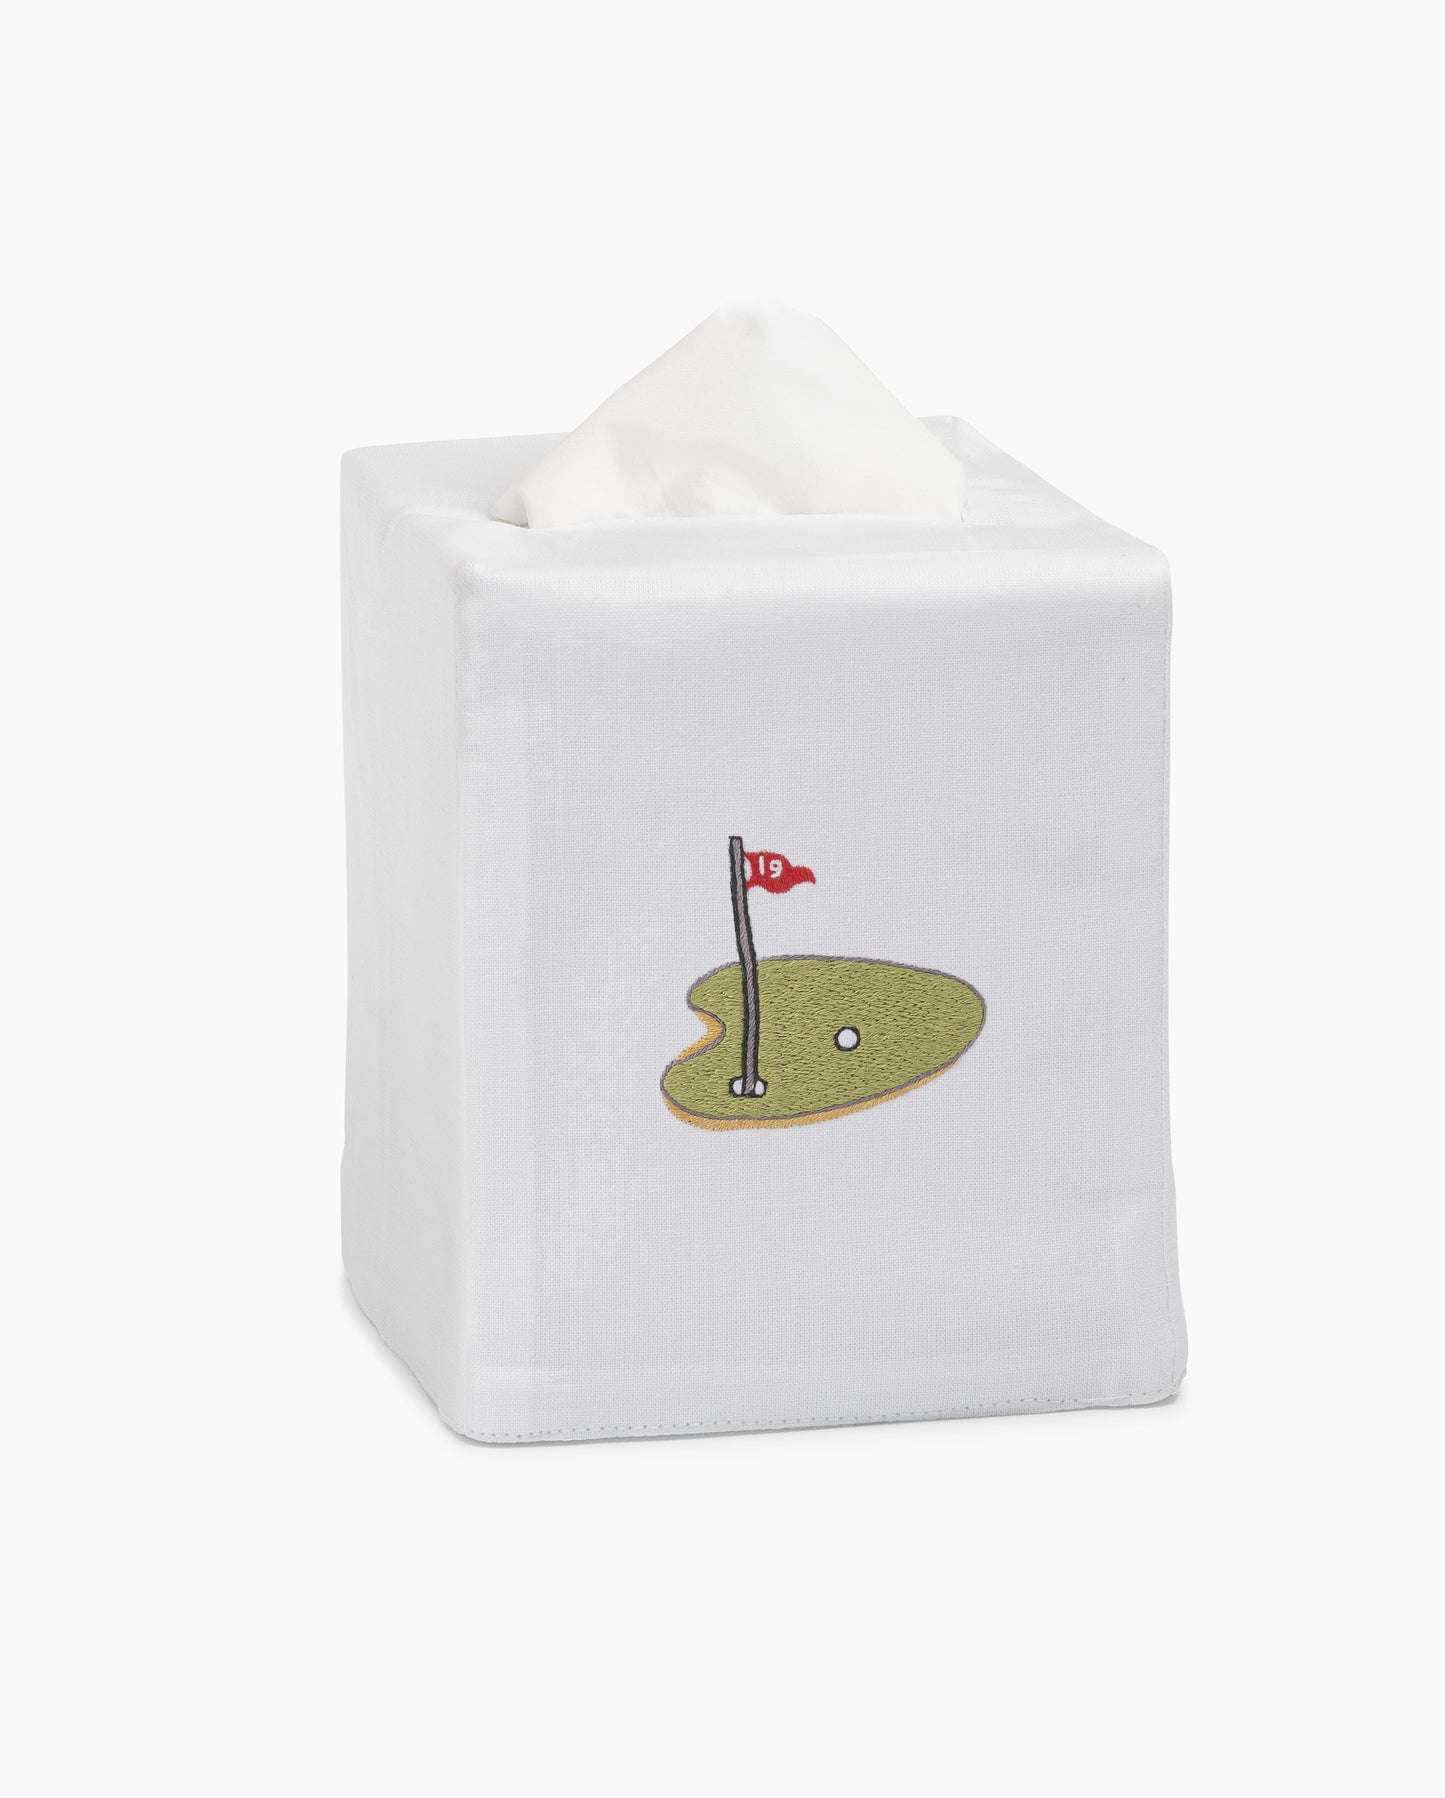 Golf Tee Tissue Box Cover